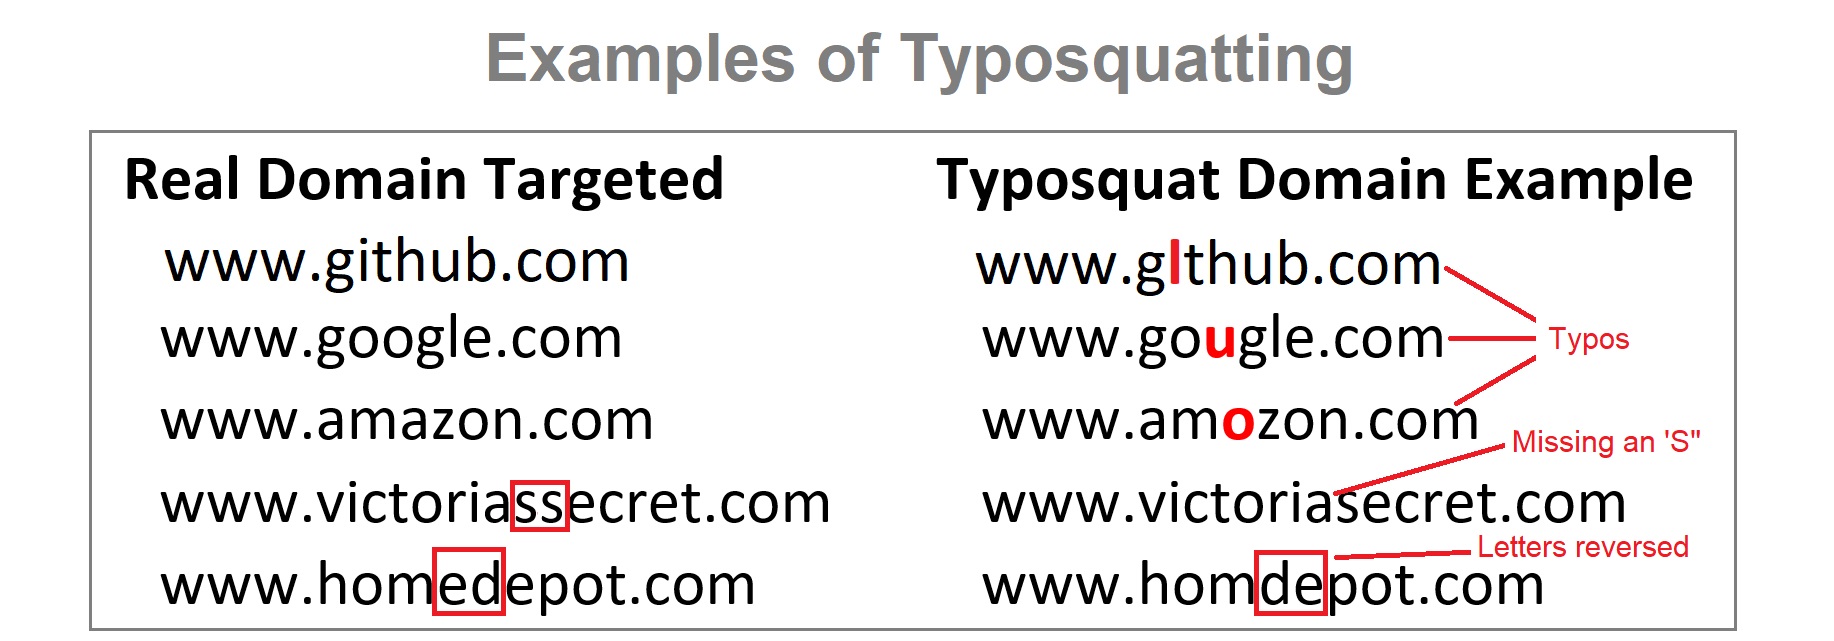 Examples of typosquatting